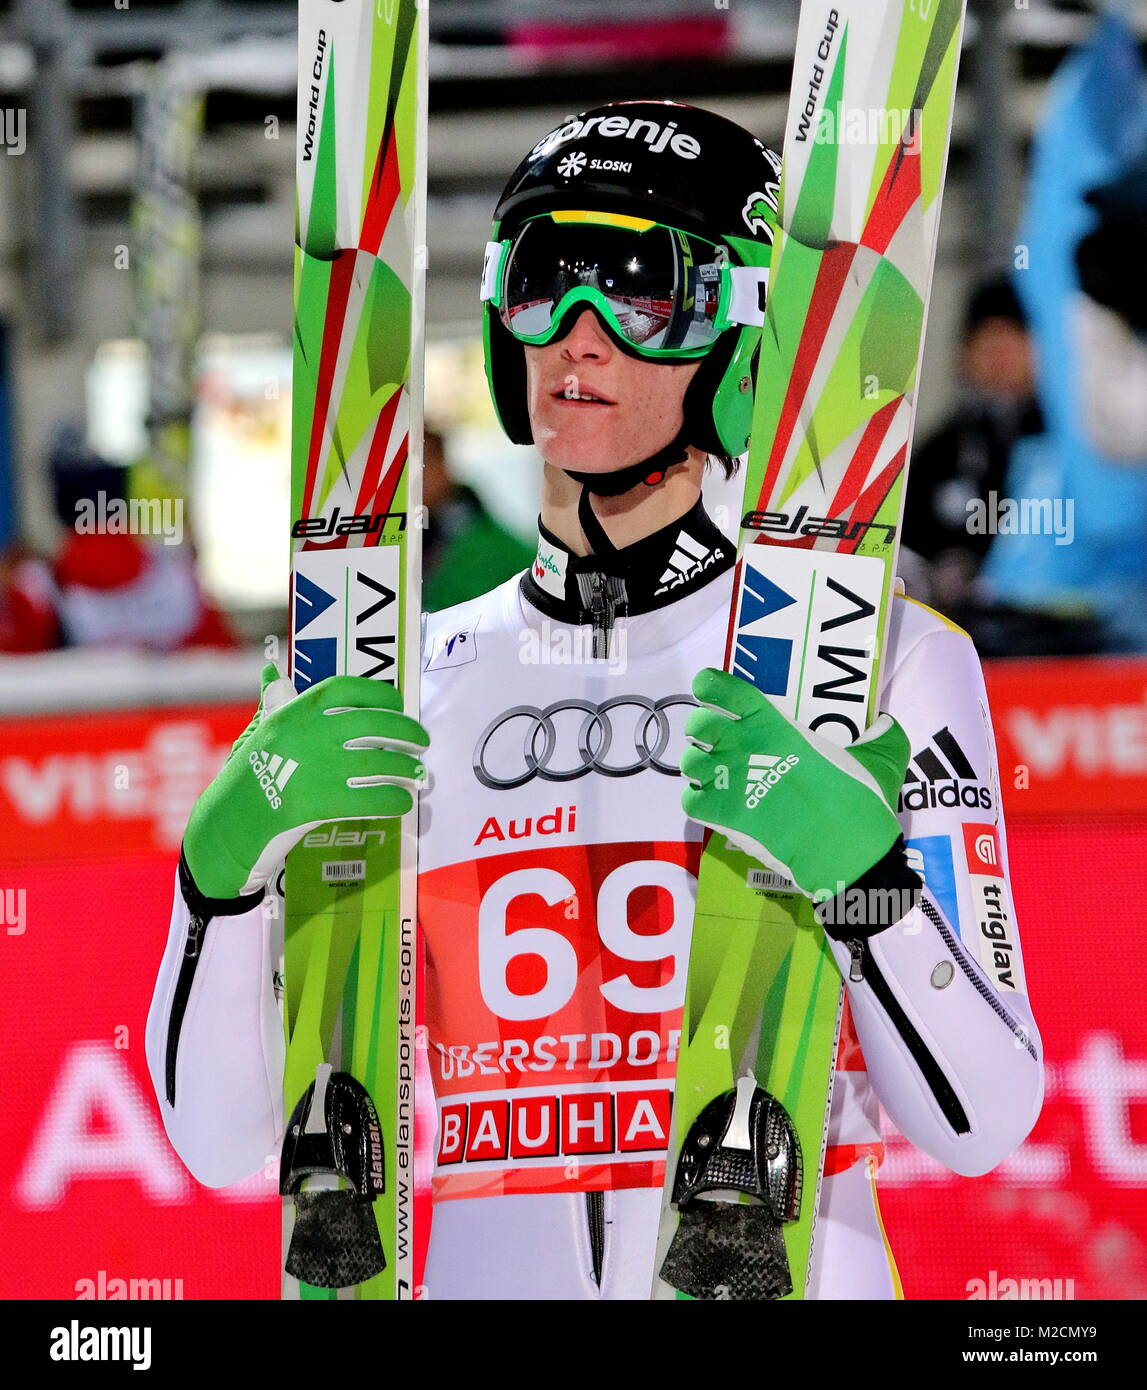 Peter PREVC (Slowenien) hat die Qualifikation für 63. Vierschanzentournee Auftaktspringen Oberstdorf gewonnen Foto de stock